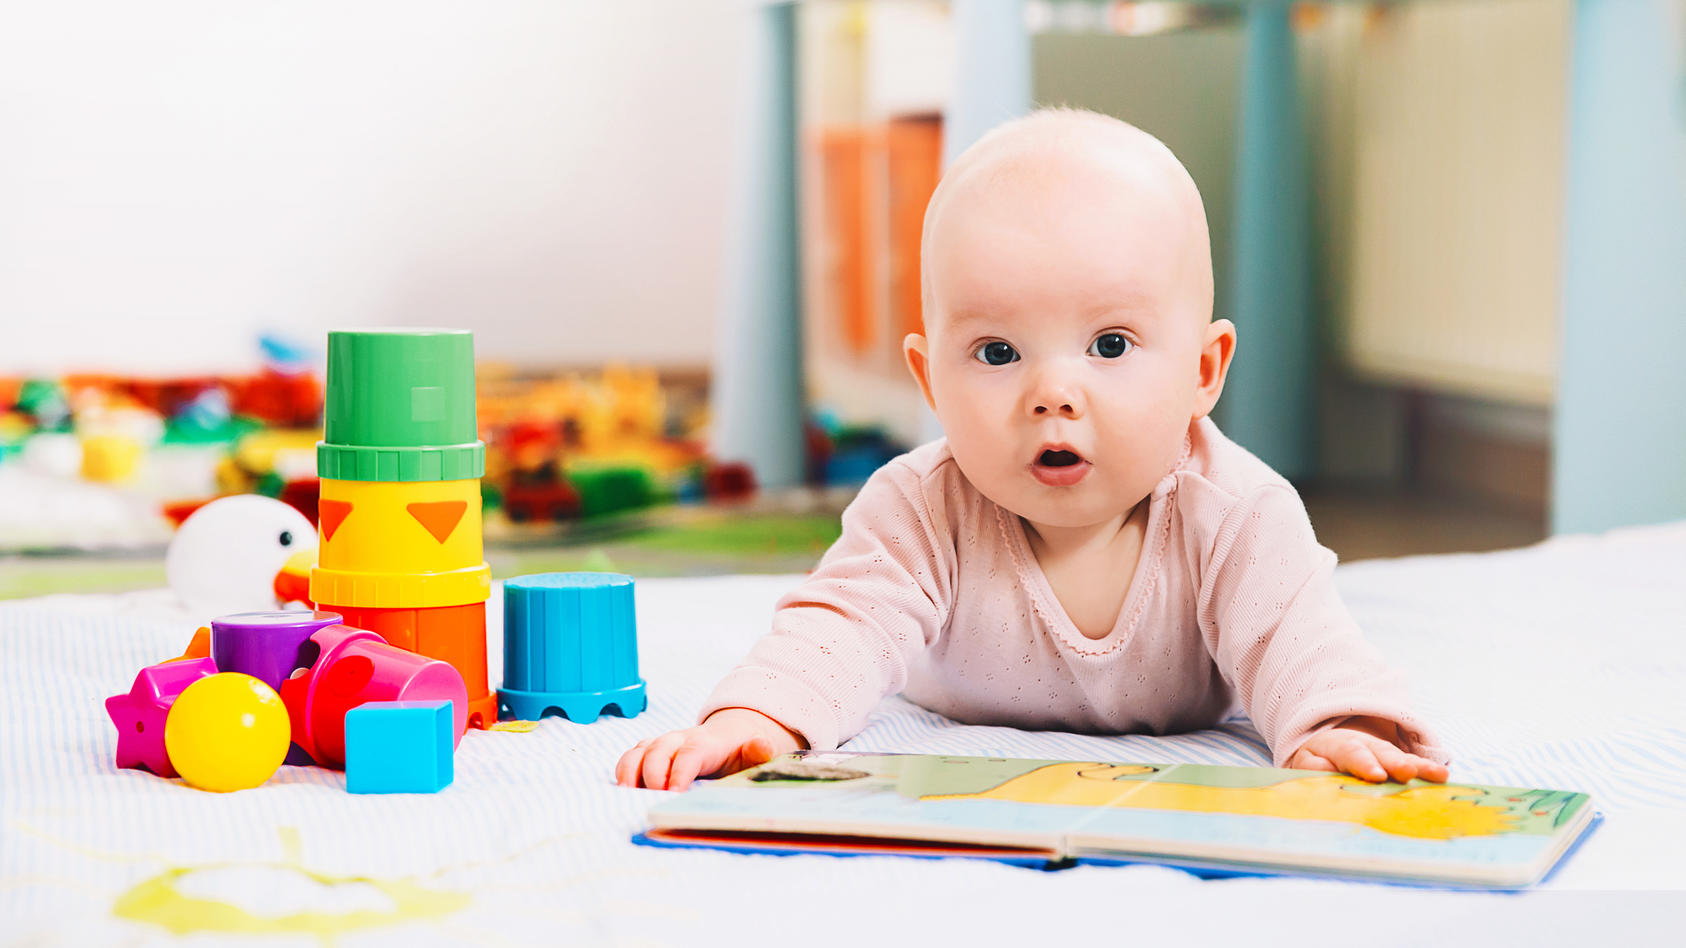 In den ersten Monaten lernt das Baby so viel, dass Eltern beinahe jeden Tag neue Veränderungen beobachten können. Wir verraten Meilensteine im wichtigen ersten Quartal